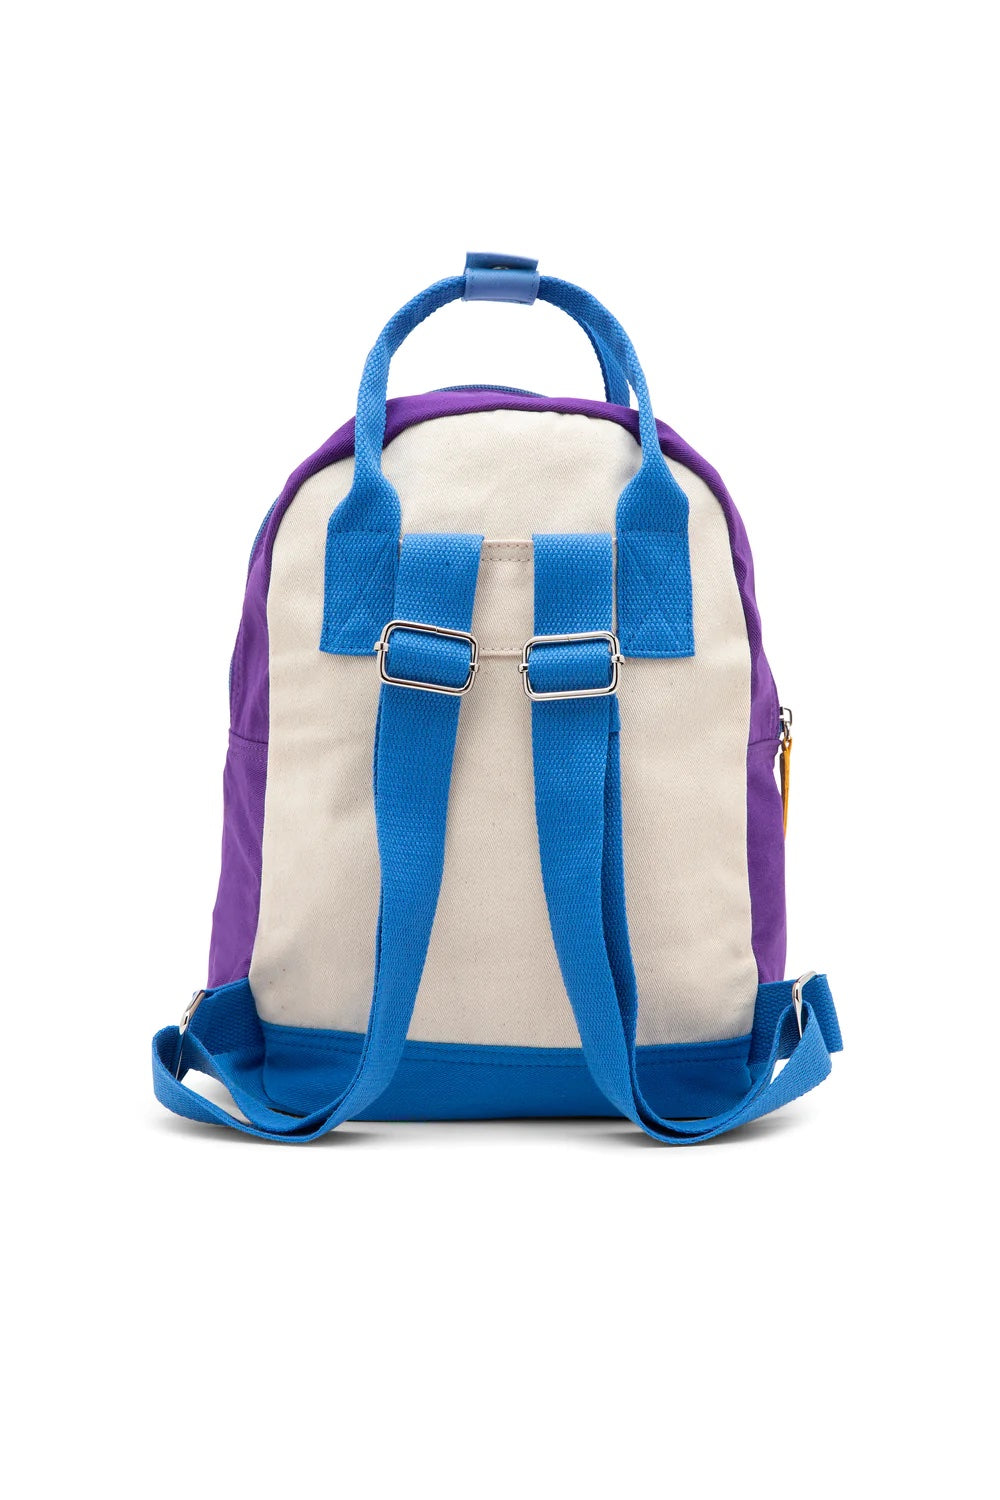 coral reef backpack